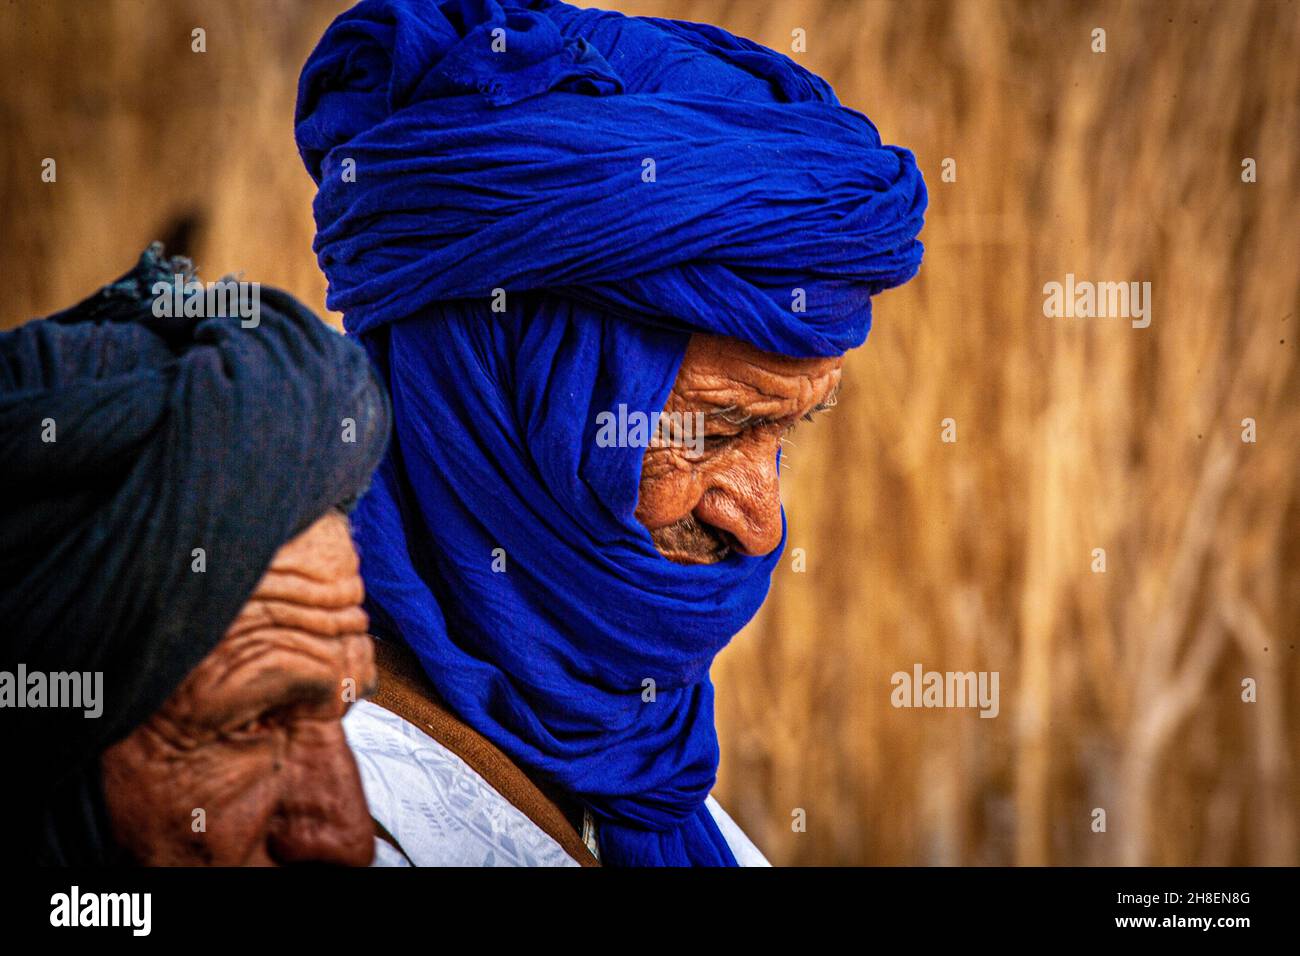 Mali, Tombouctou , gros plan portrait d'un tuareg avec un turban bleu.Portrait d'un Tuareg avec turban indigo Banque D'Images